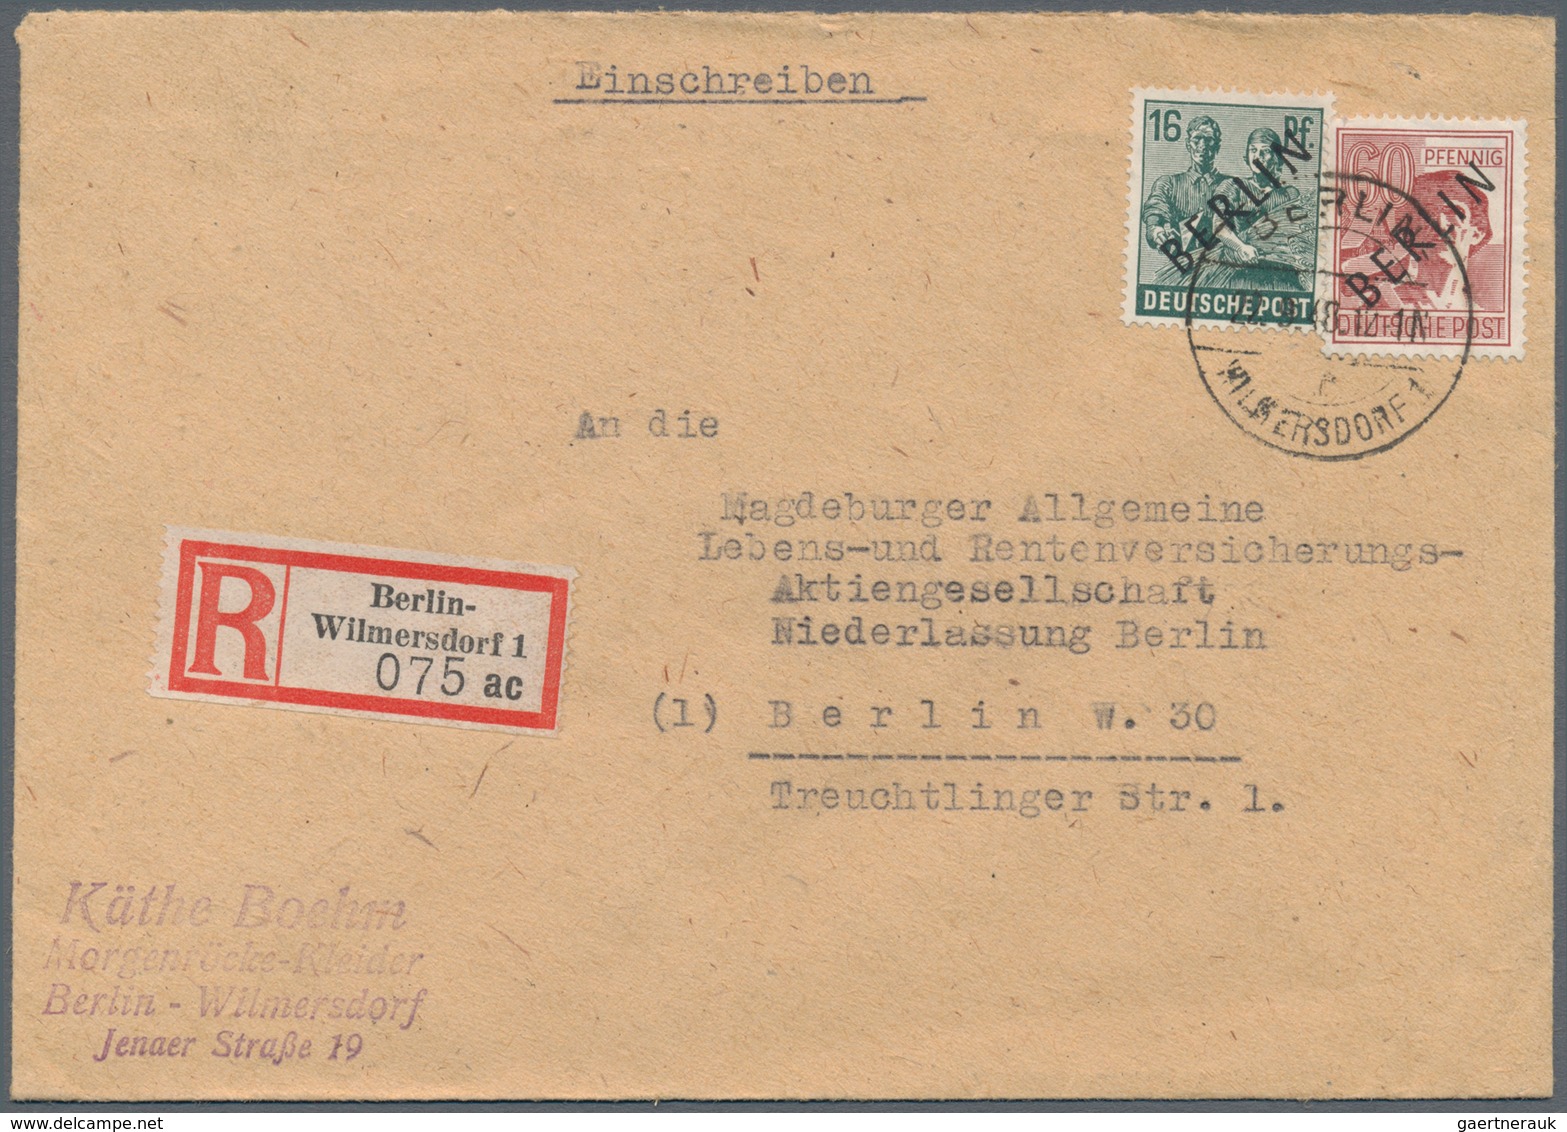 Berlin: 1948, Schwarzaufdruck 16 Pf. und 60 Pf. jeweils auf fünf R-Briefen als portogerechte 76 Pf.-